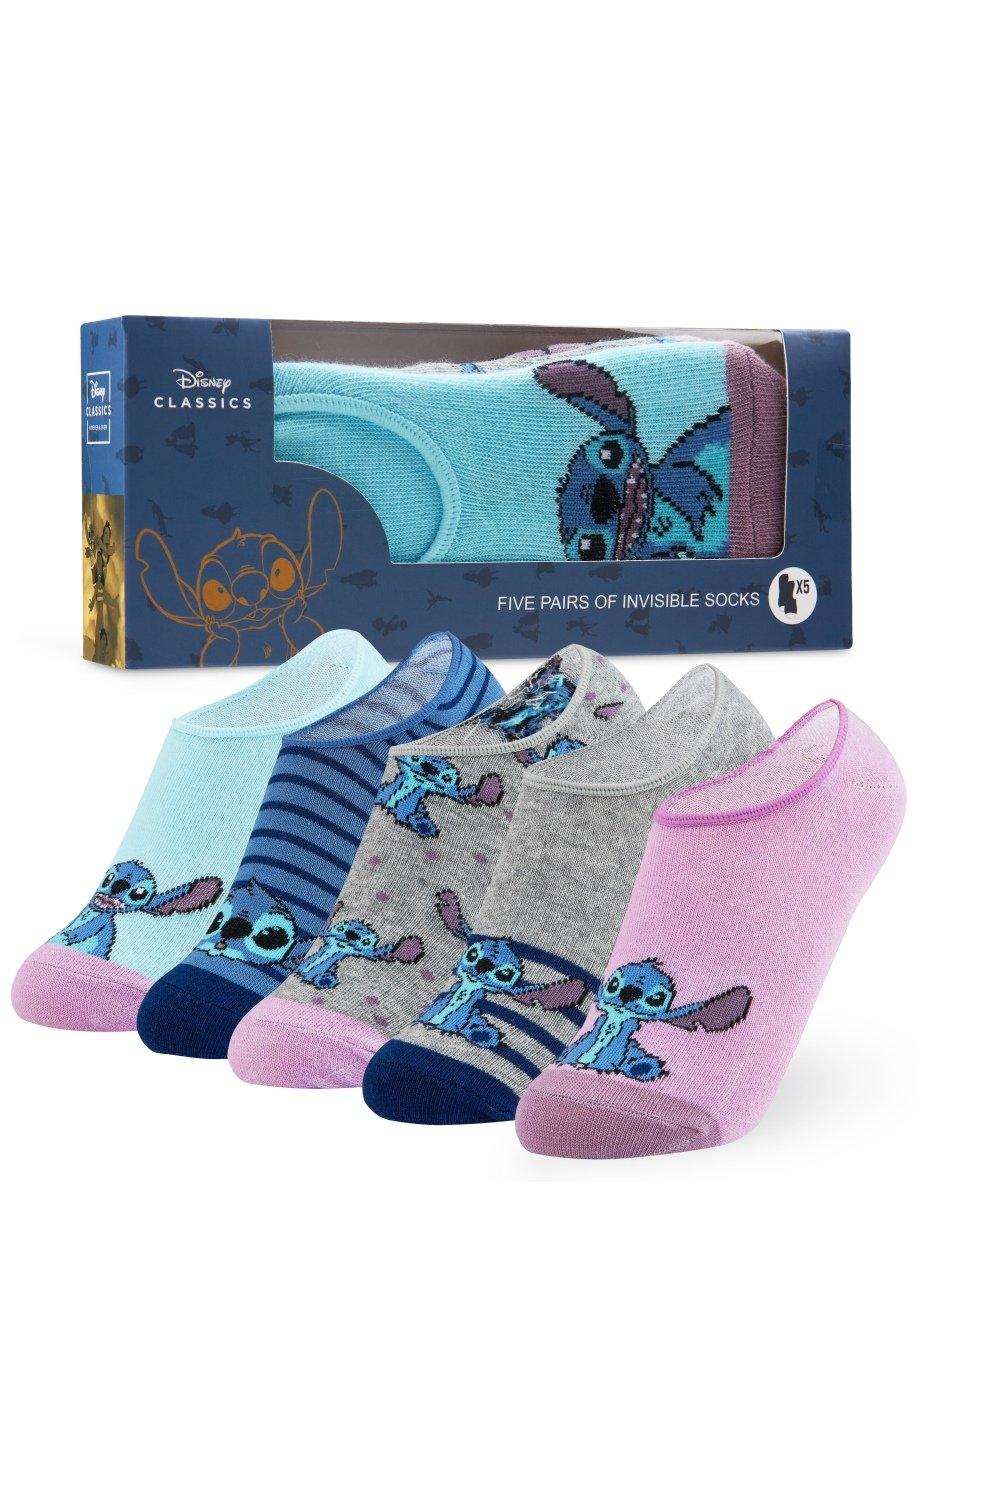 Носки Stitch, 5 шт. Disney, мультиколор носки детские с принтами disney